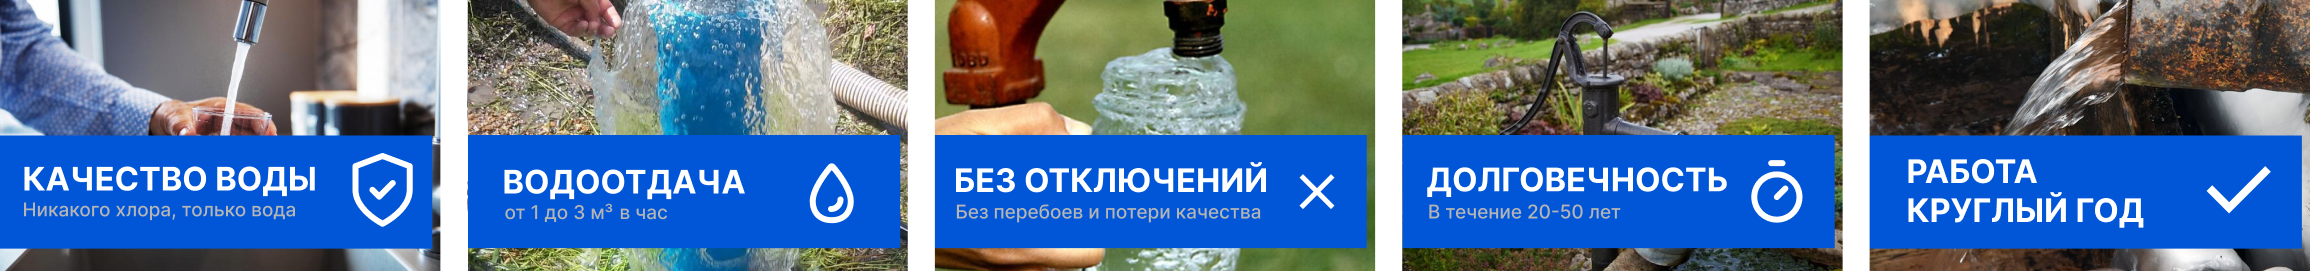 Бурение скважин на воду в Витебске и области и монтаж обсадной колонны для скважины